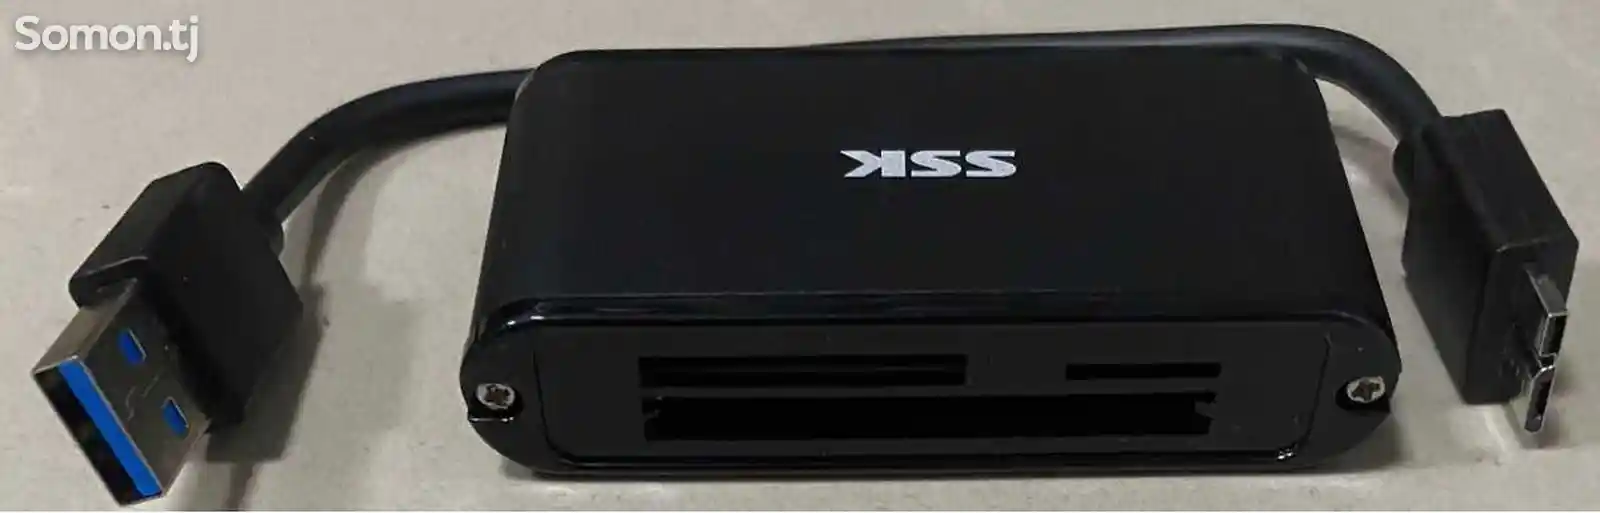 Адаптер USB 3.0 Card Reader-4